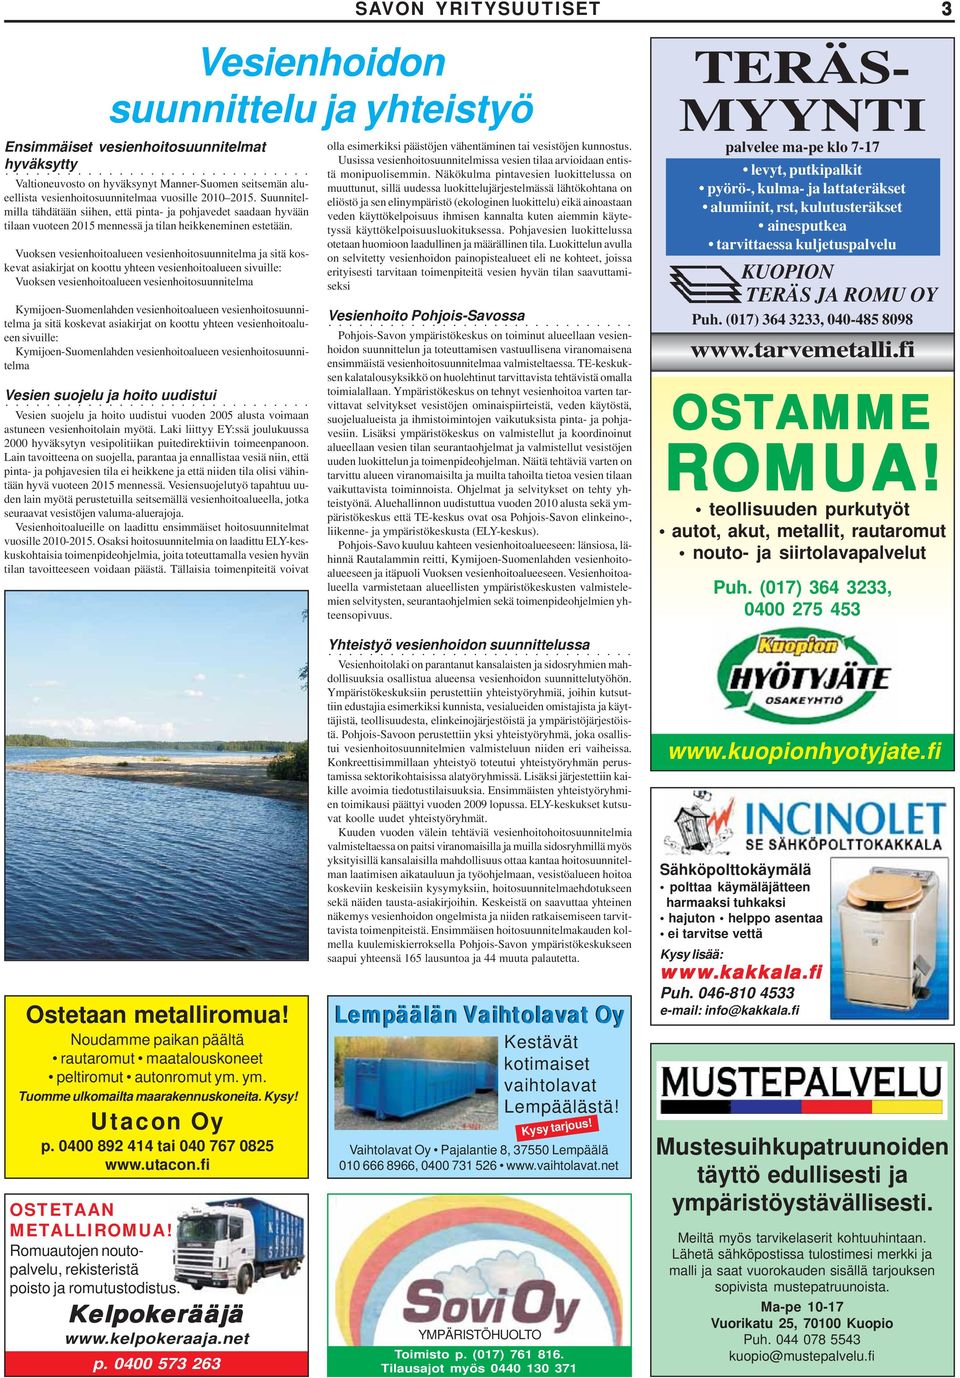 Vuoksen vesienhoitoalueen vesienhoitosuunnitelma ja sitä koskevat asiakirjat on koottu yhteen vesienhoitoalueen sivuille: Vuoksen vesienhoitoalueen vesienhoitosuunnitelma Kymijoen-Suomenlahden